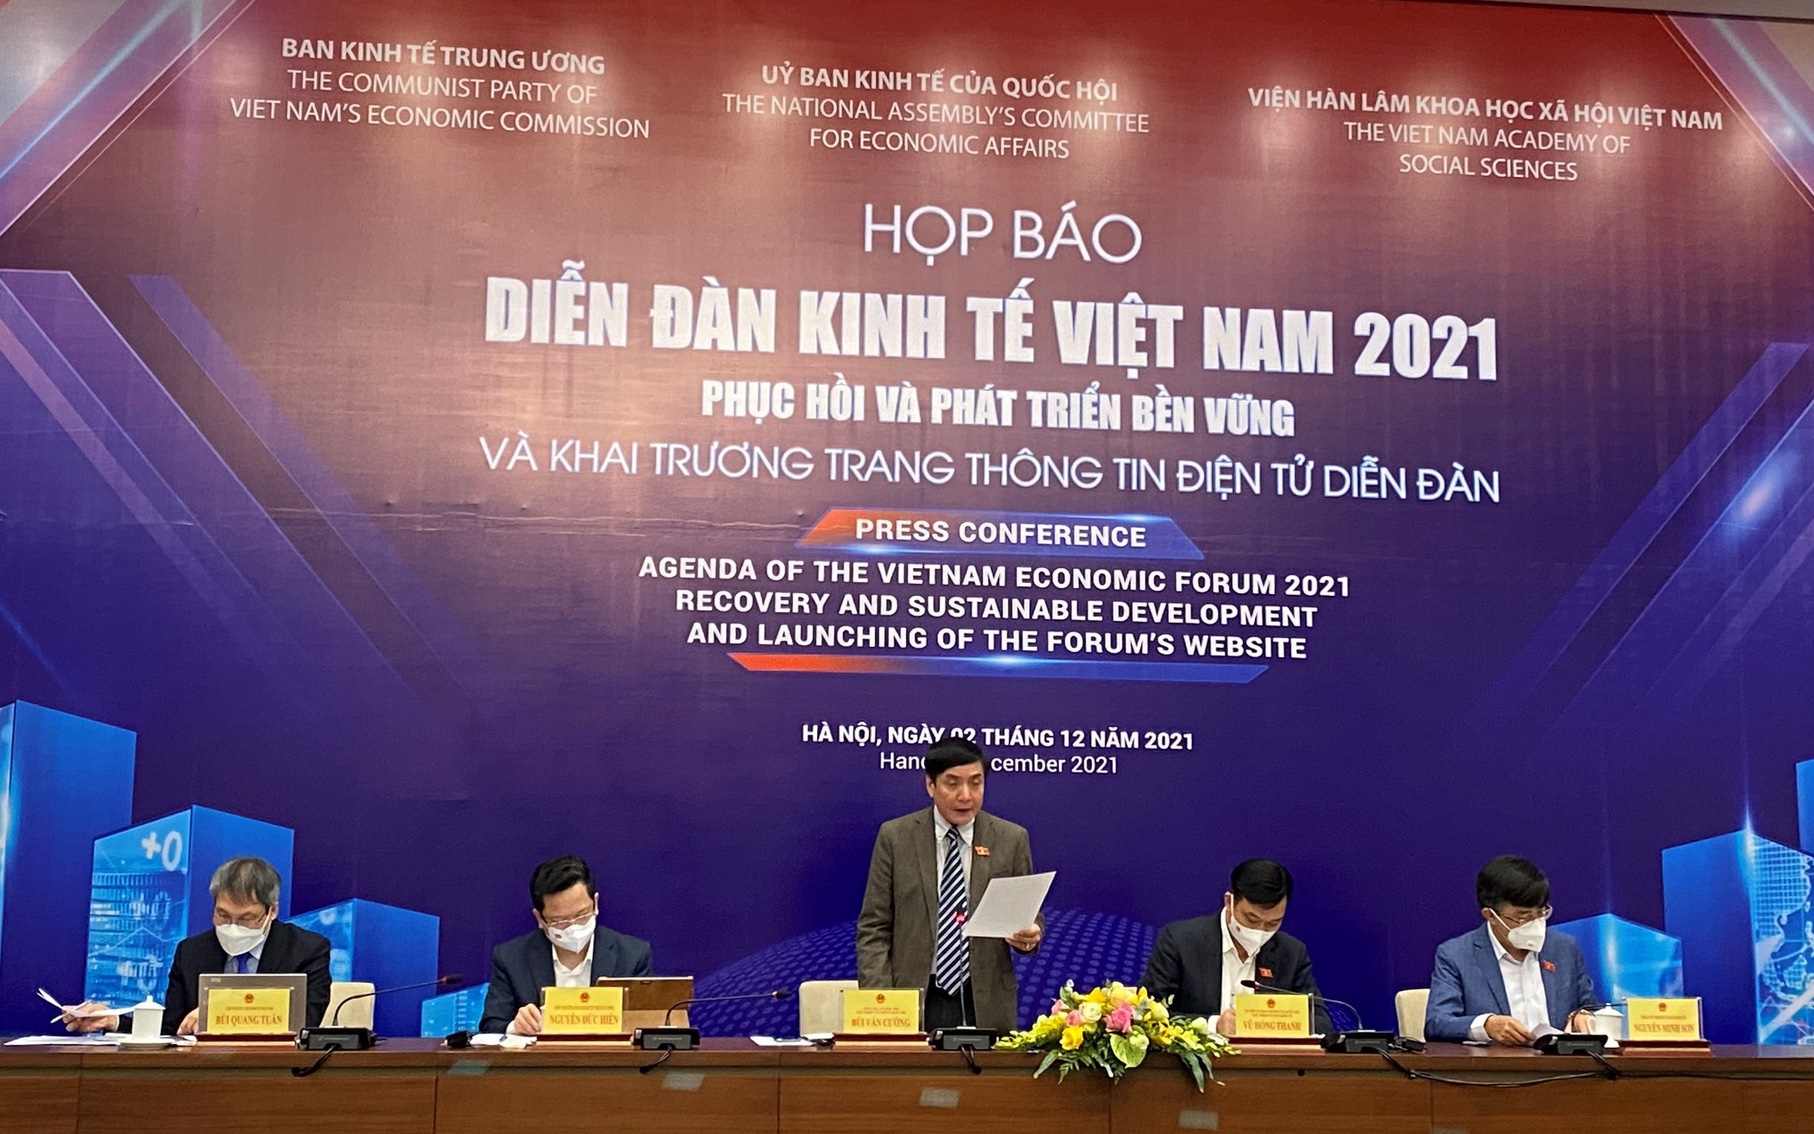 Diễn đàn kinh tế Việt Nam 2021 phục hồi và phát triển bền vững được tổ chức vào ngày 5/12